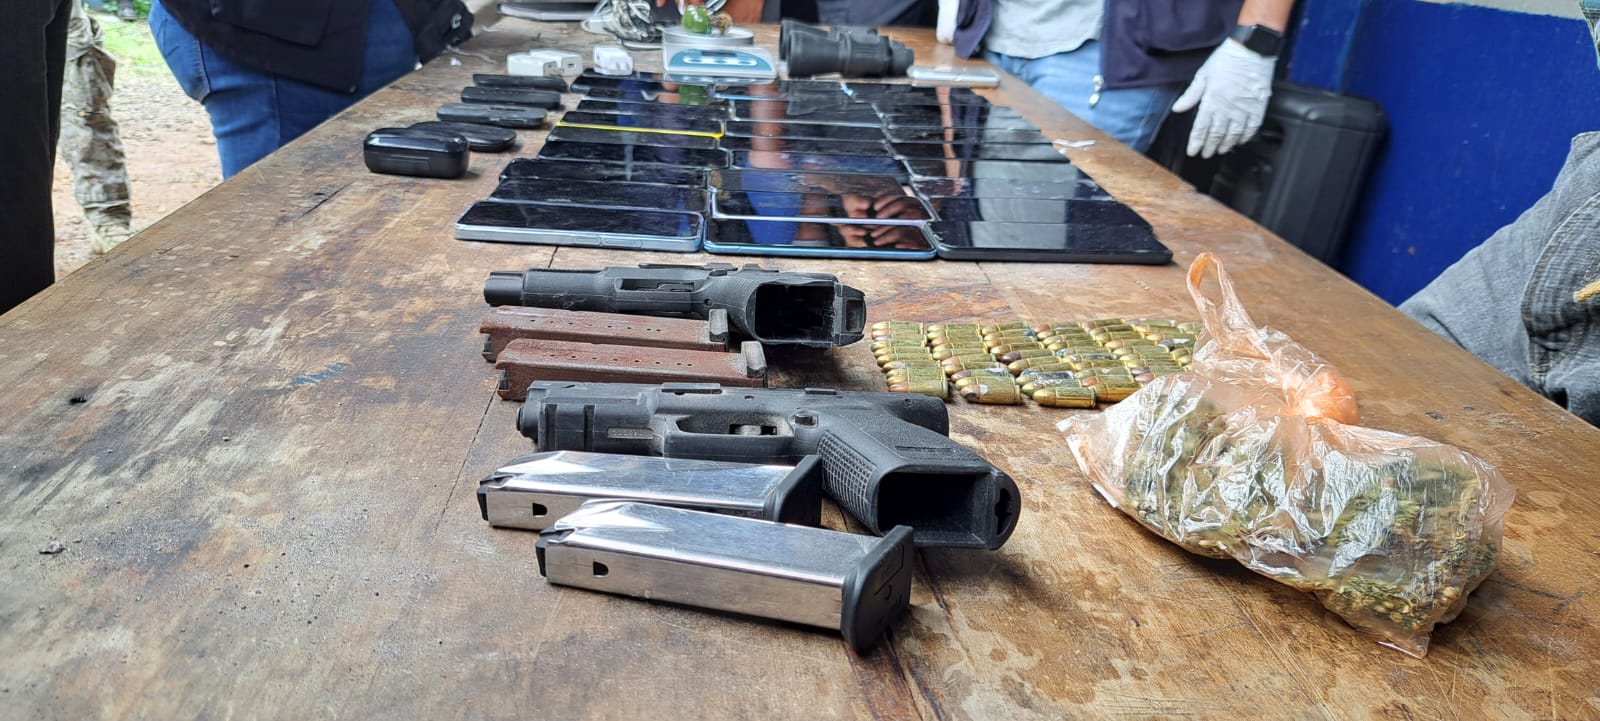 Armas de fuego y teléfonos móviles fueron hallados este 24 de mayo durante una requisa en El Infiernito. (Foto Prensa Libre: PNC)